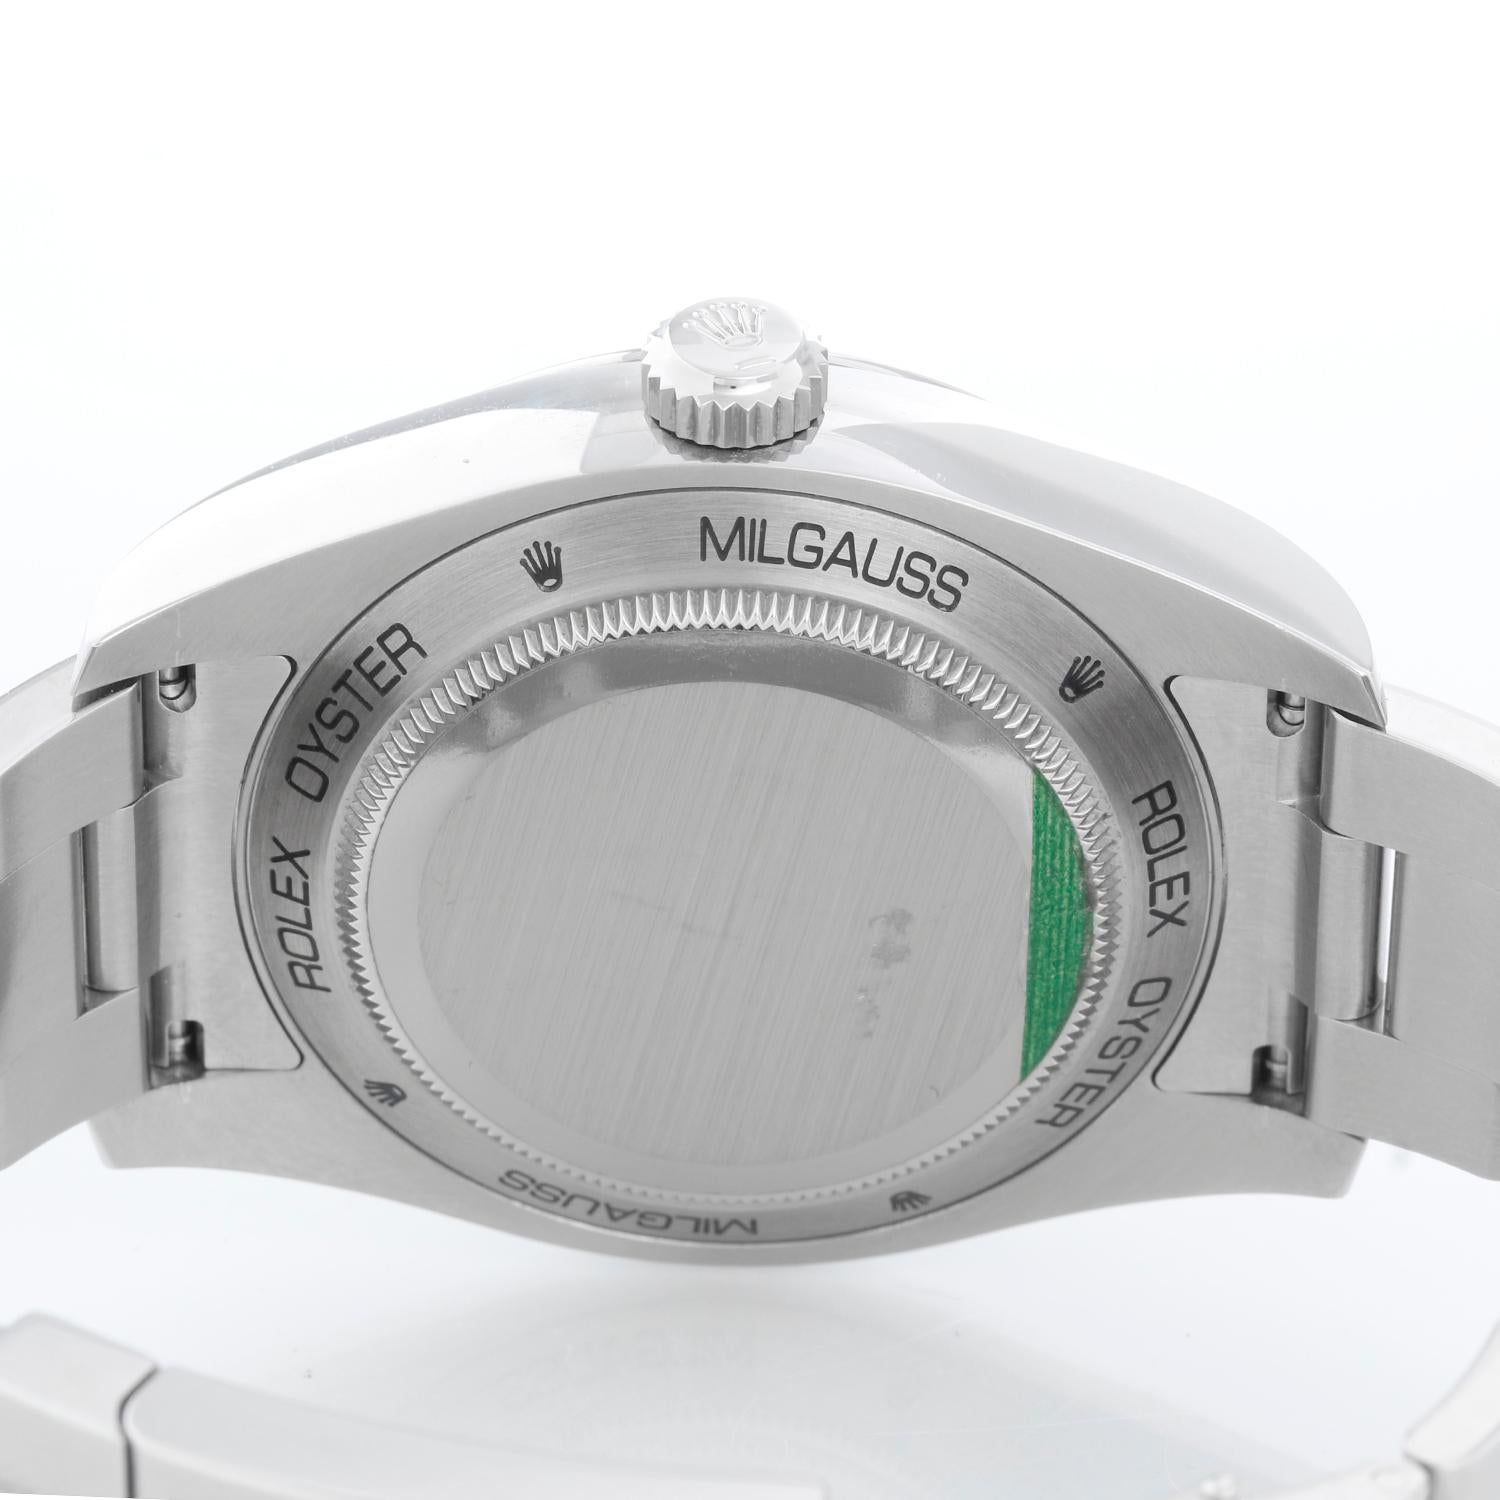 Men's Rolex Milgauss Green Crystal Anniversary Model 116400 GV